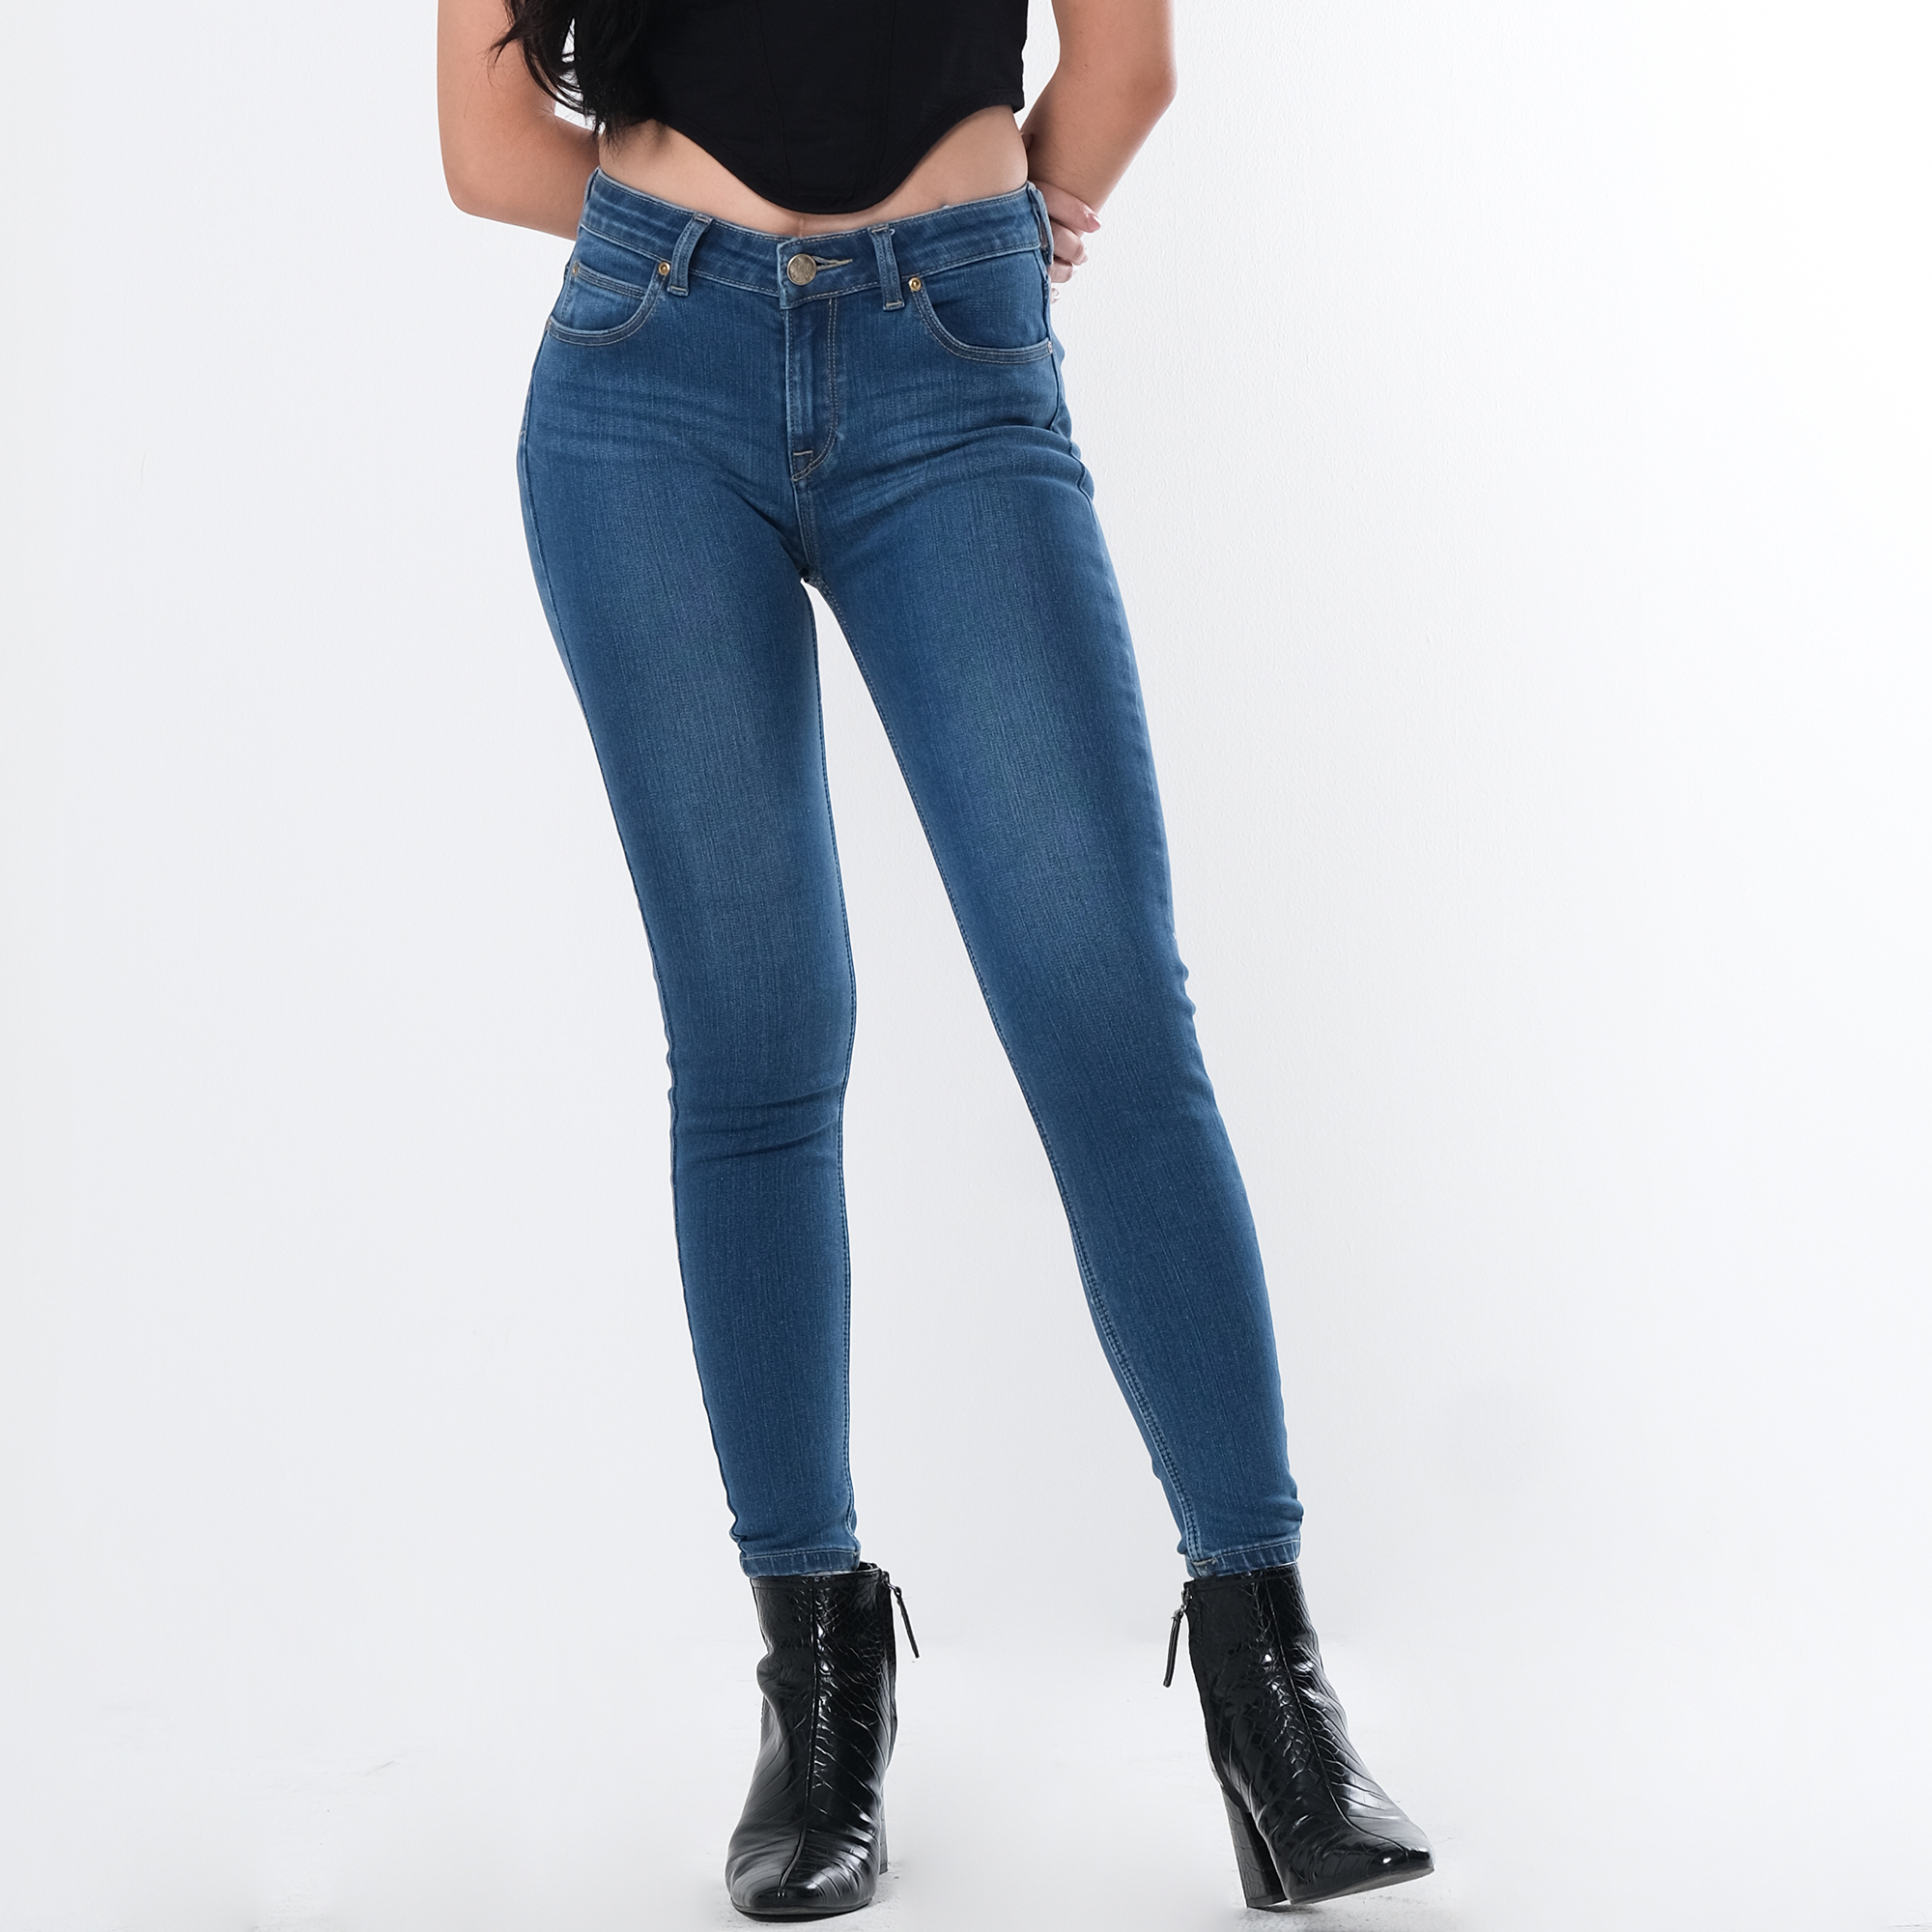 Buy Lee Jeans Online 